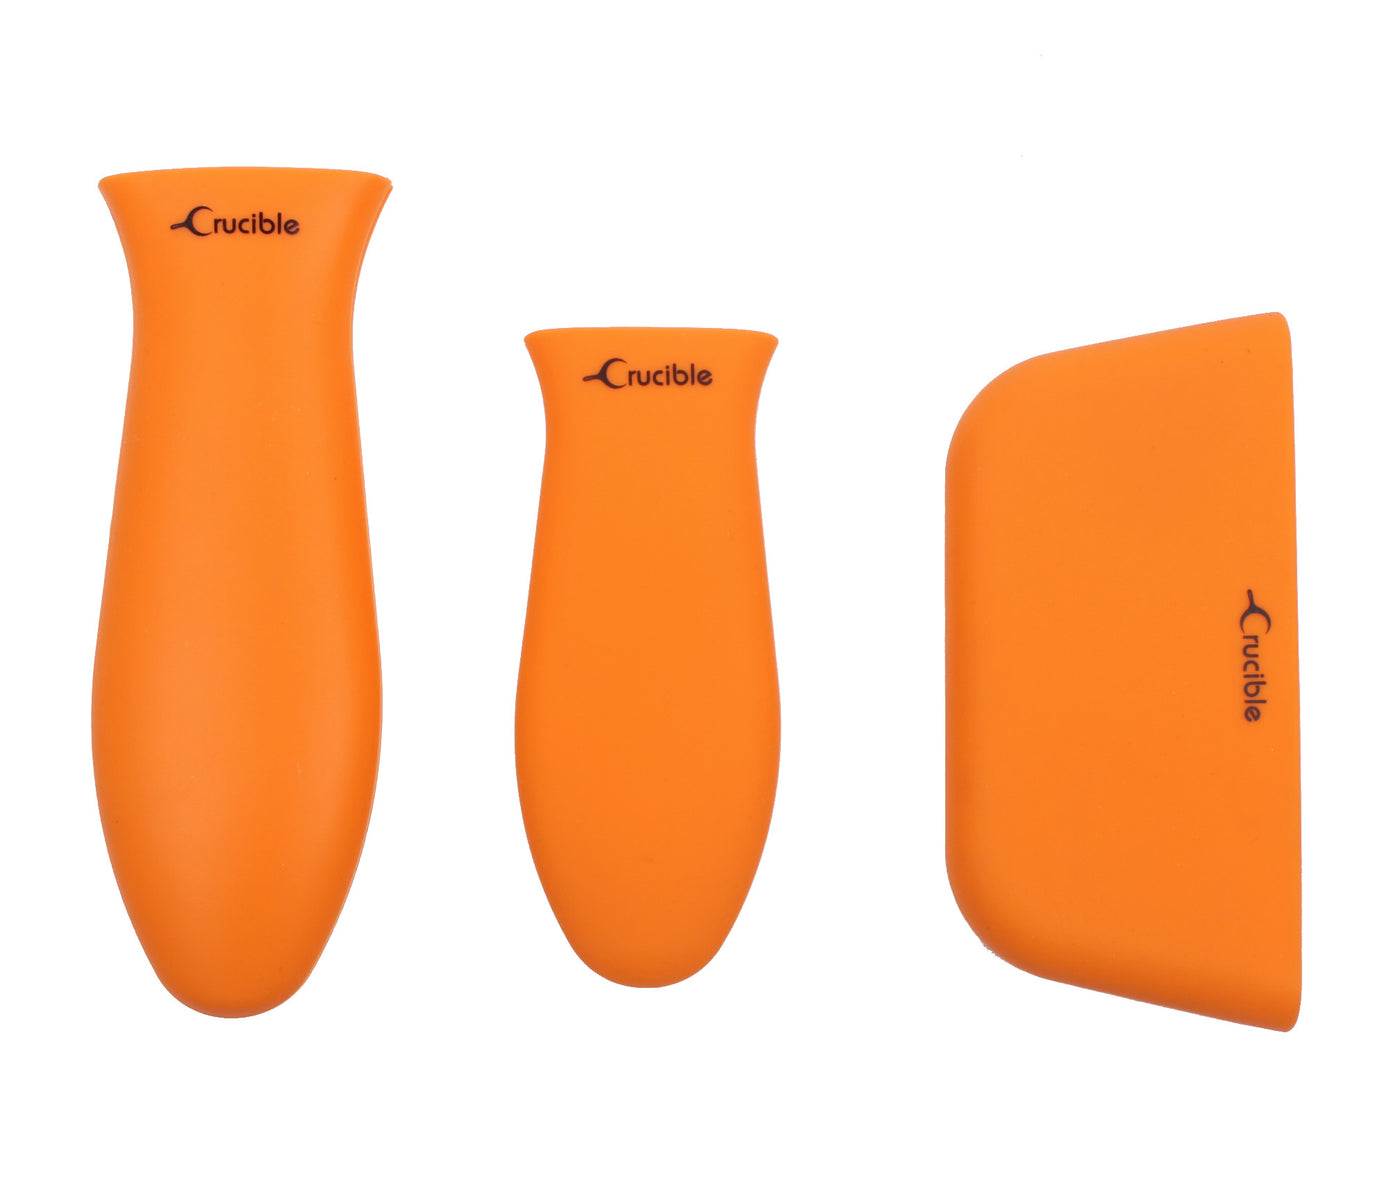 Силиконовый держатель для горячей ручки, прихватки (3 шт., оранжевый цвет), рукоятка, крышка ручки